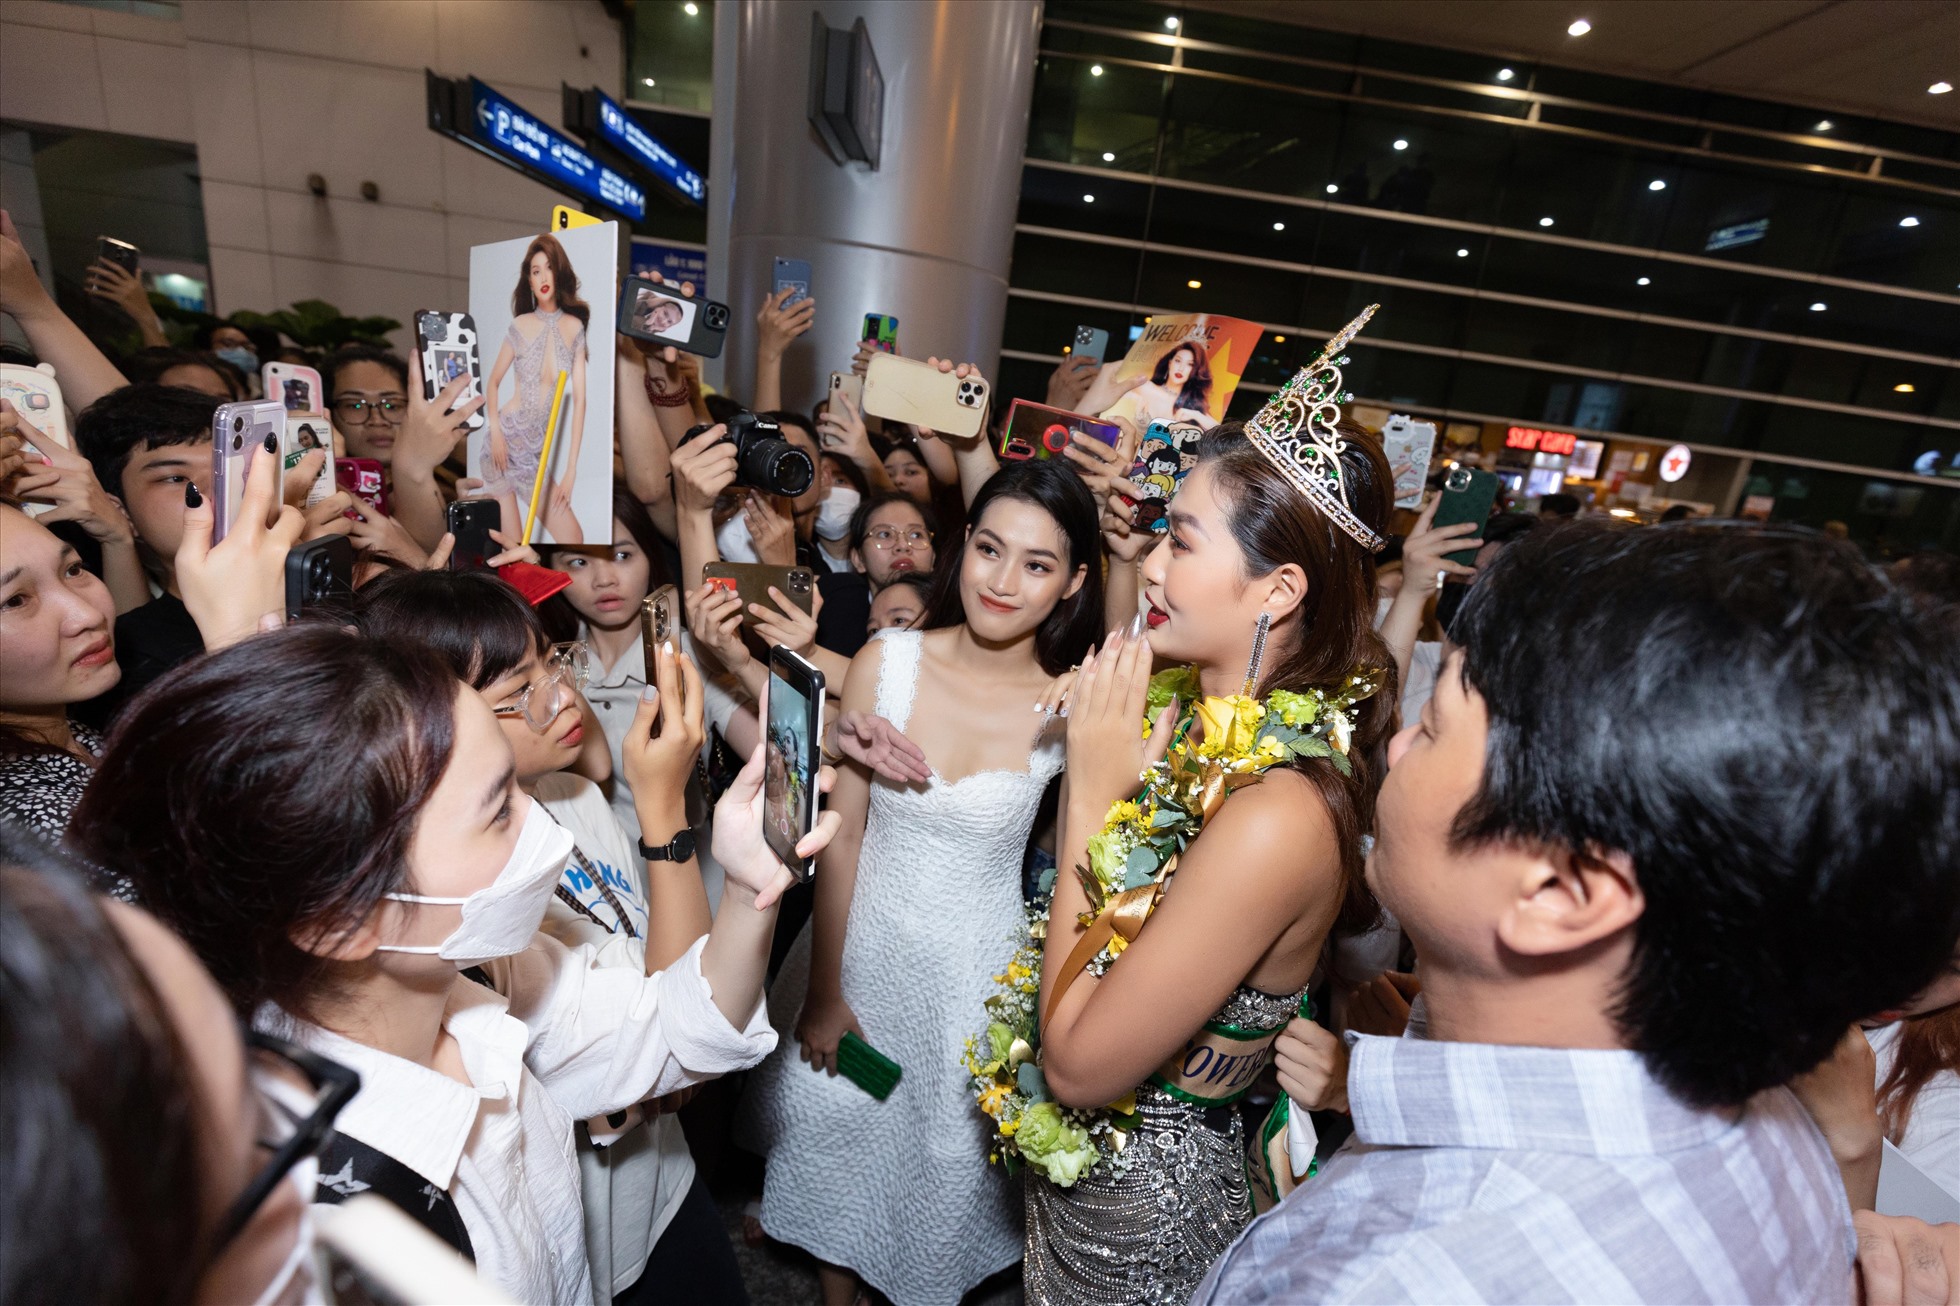 Người hâm mộ có mặt từ rất sớm để chào đón nàng hậu, mặc dù chỉ dừng chân ở Top 20 nhưng nàng hậu đặc biệt chiếm được tình cảm lớn của người hâm mộ Việt Nam bởi sự duyên dáng và đáng yêu trong cách ứng xử và giao tiếp của mình.